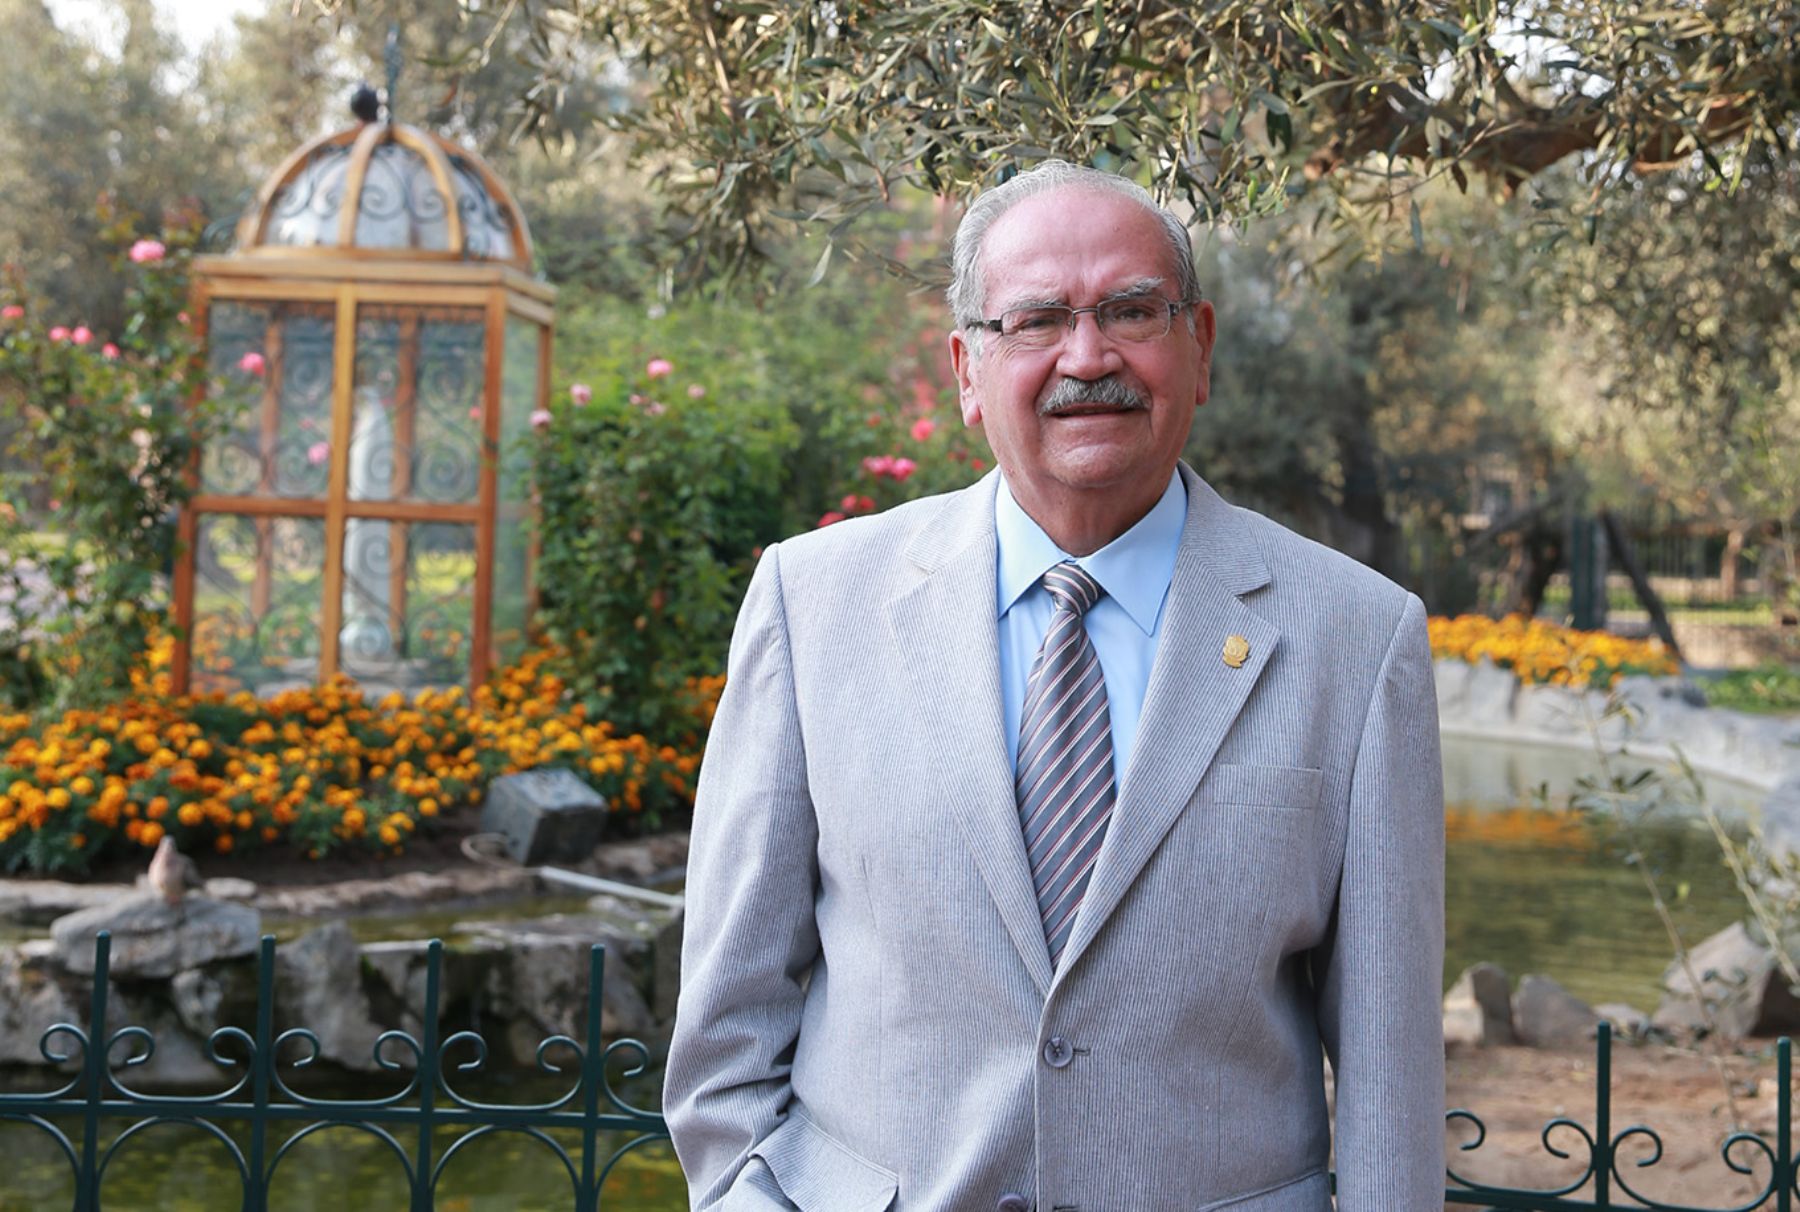 Falleció alcalde de San Isidro Raul Cantella a los 79 años de edad